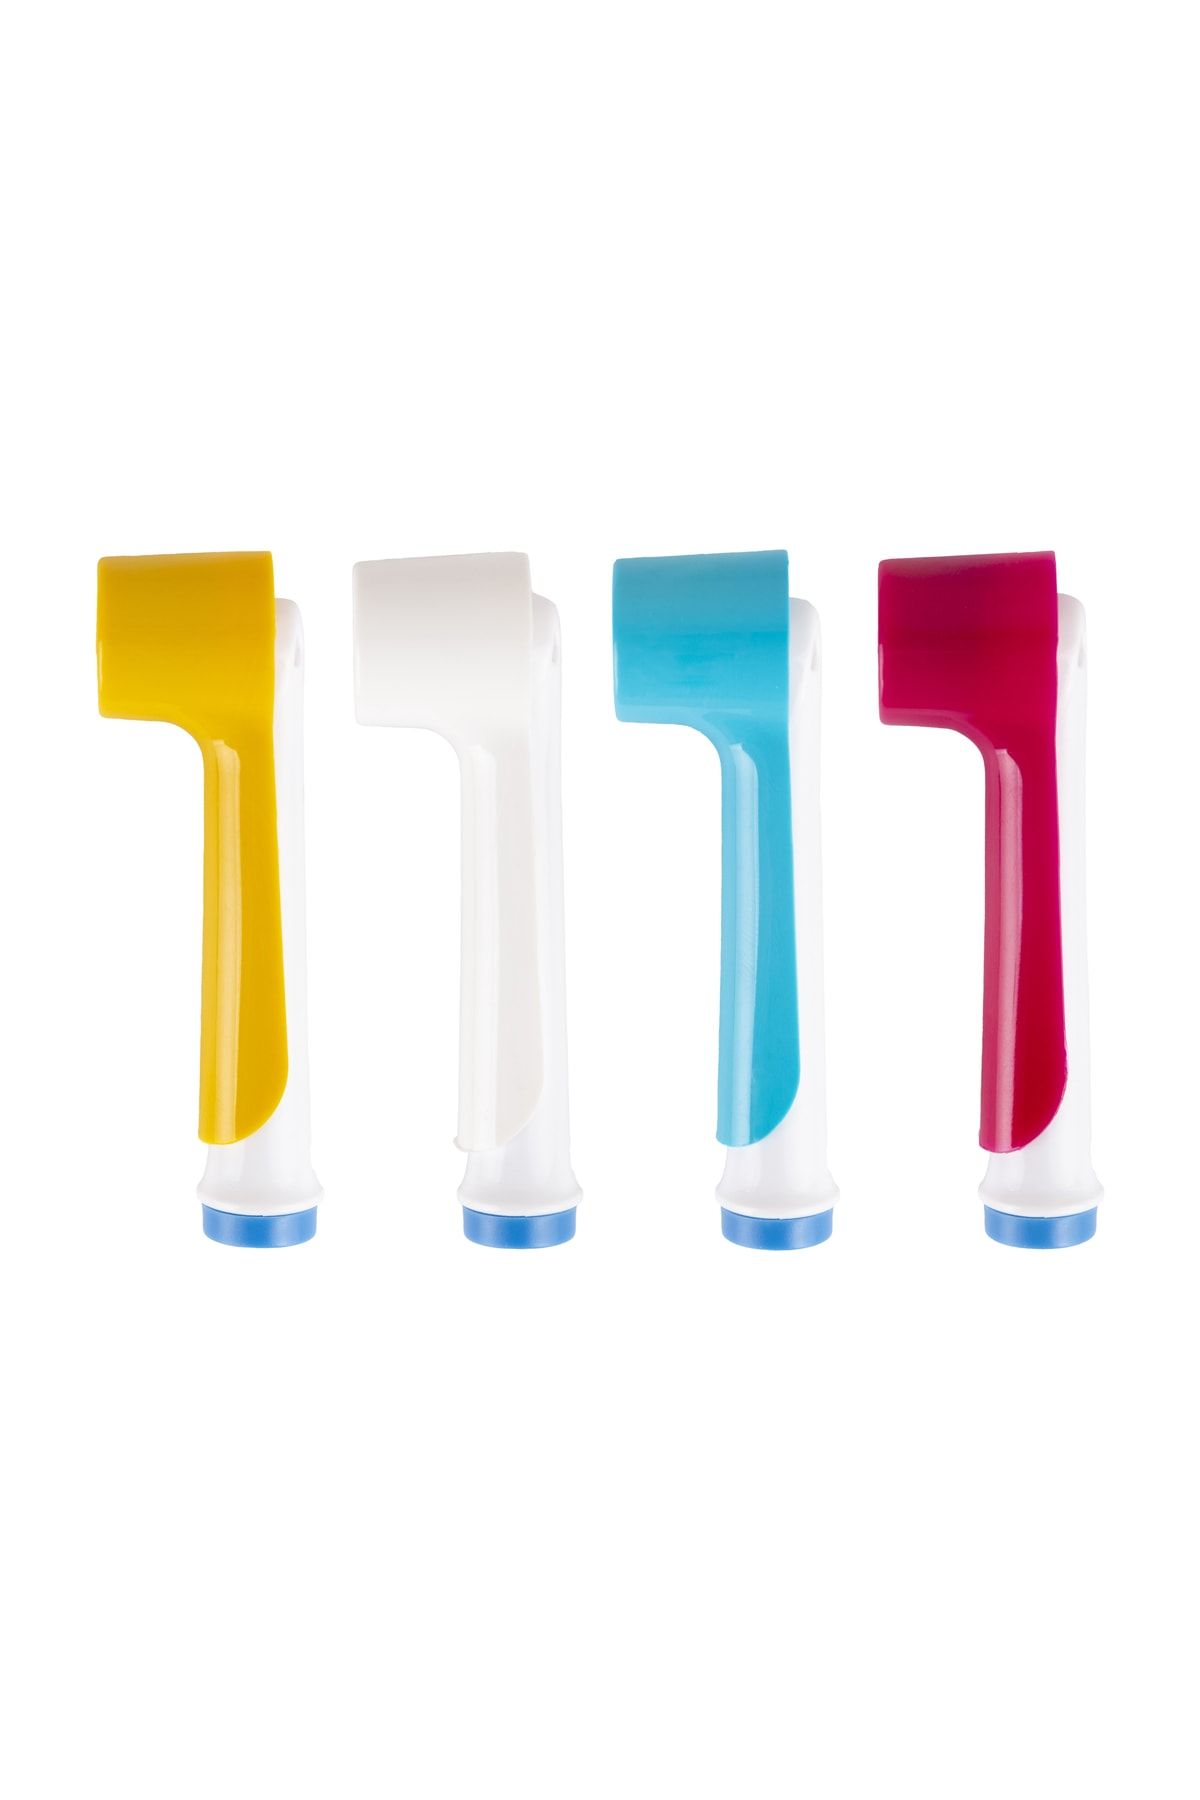 ibrush Oral-b Şarjlı Ve Pilli Diş Fırçaları Için Uyumlu Renkli 4 Adet Kapak S-o-t-p